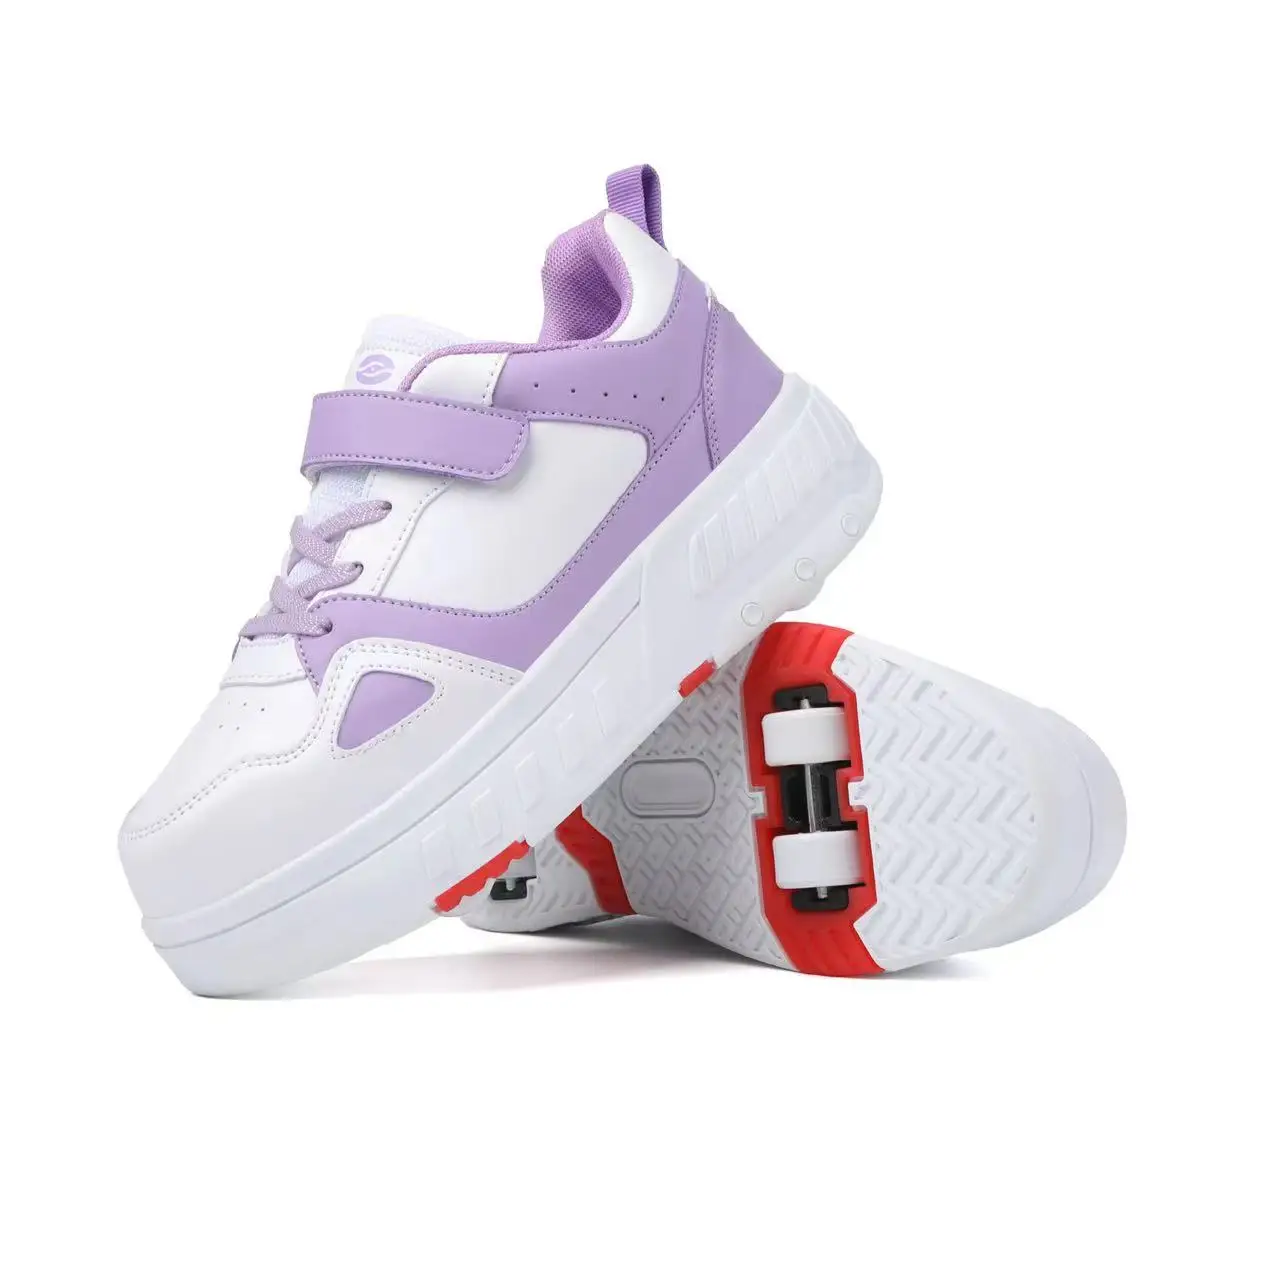 Moda Dört tekerlekli Ayrılabilir Paten Ayakkabı Çocuklar İçin Erkek Kız Rahat Spor Deformasyon Sneakers çocuk oyuncakları Hediye